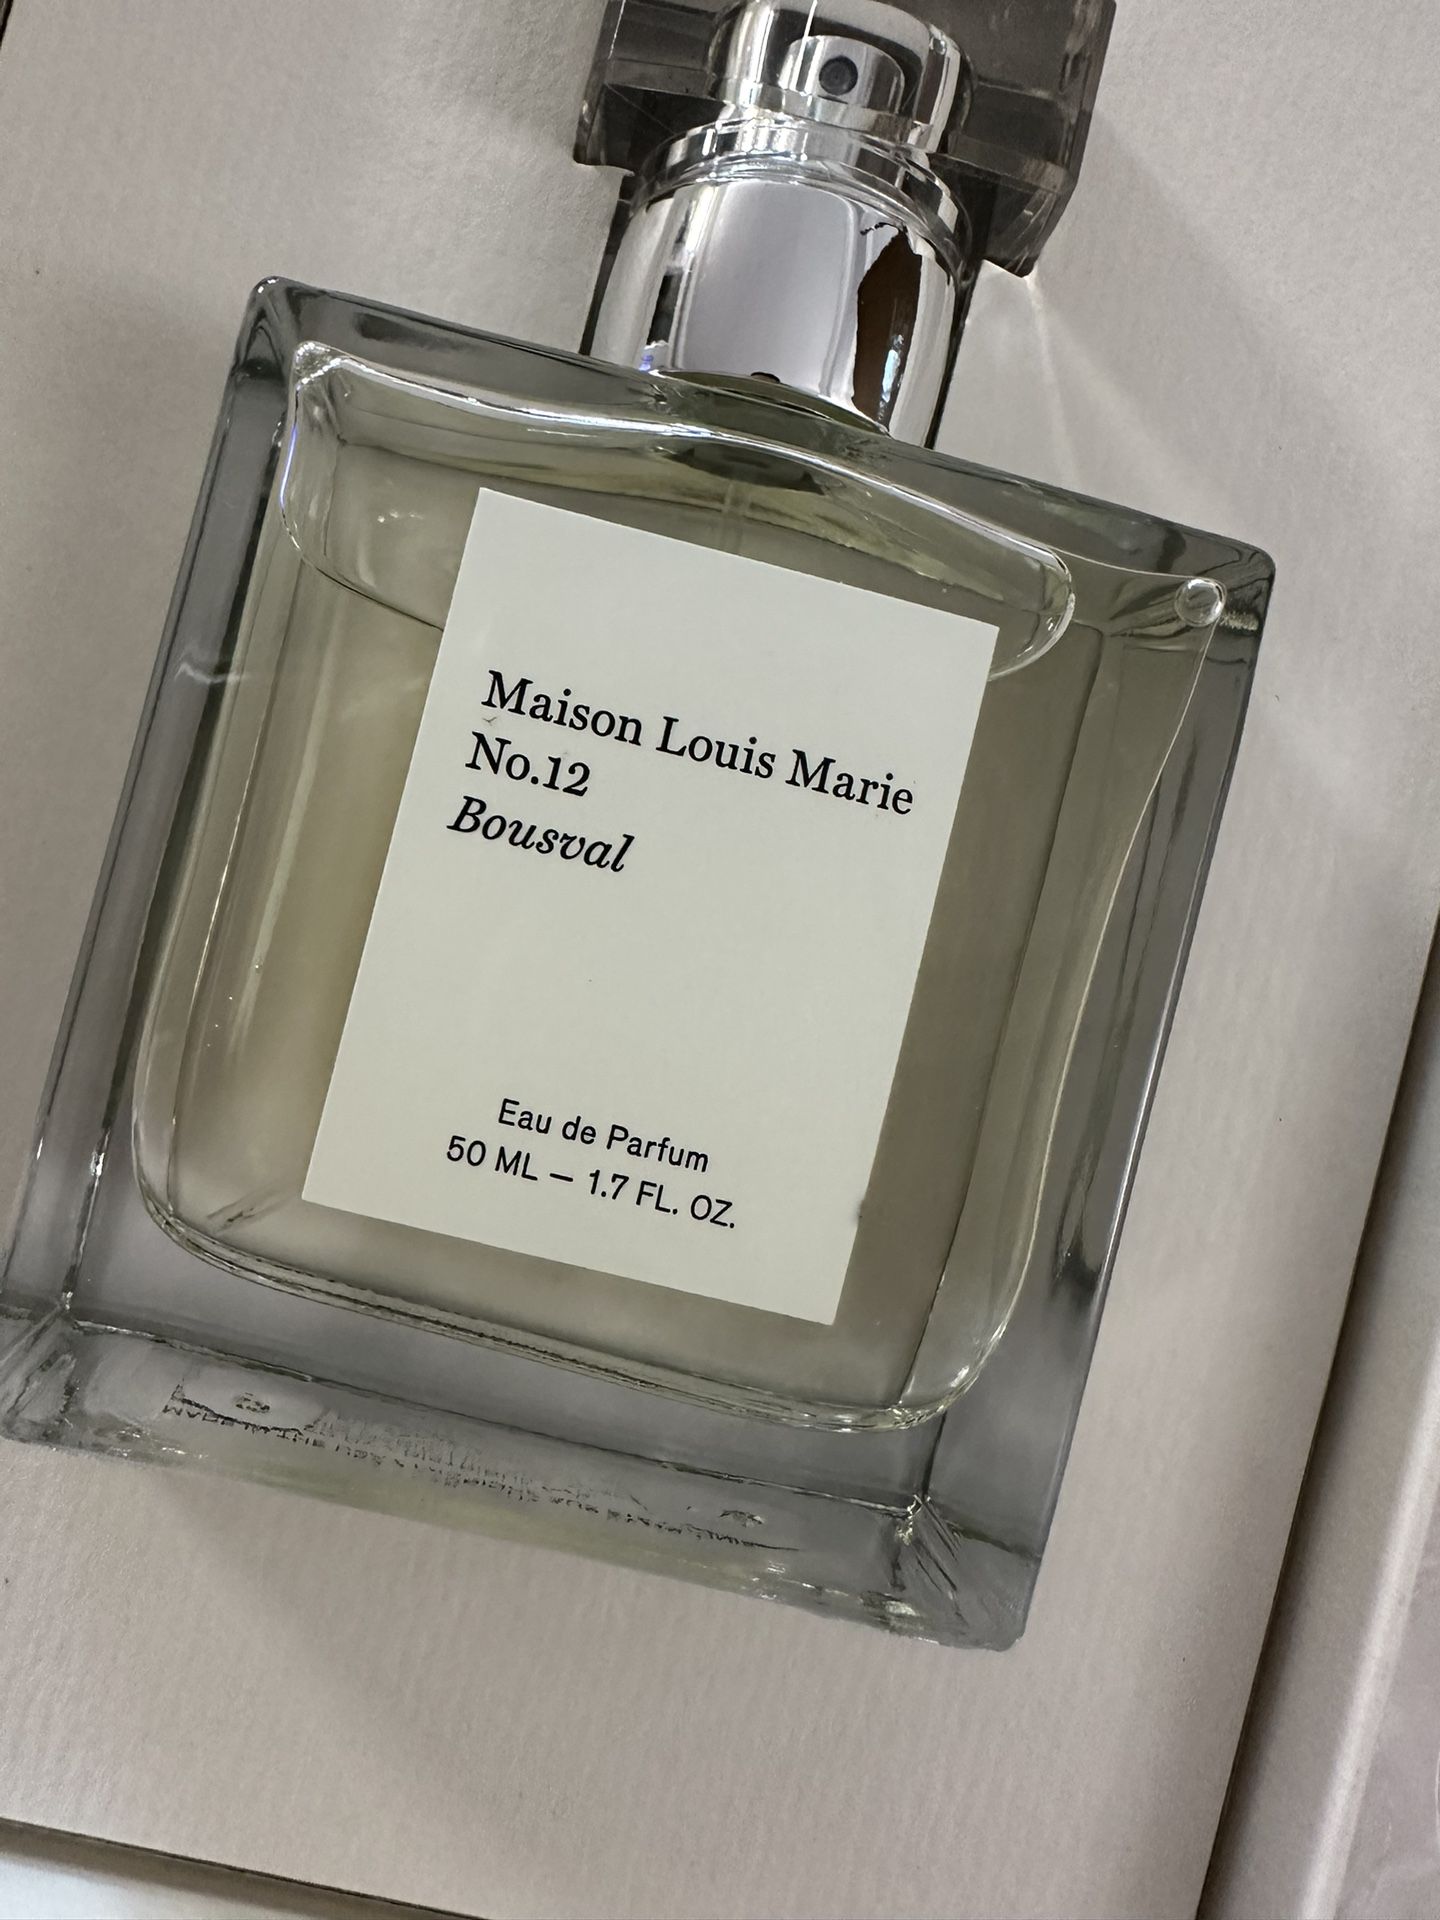 Maison Louis Marie No.12 - Bousval Eau de Parfum